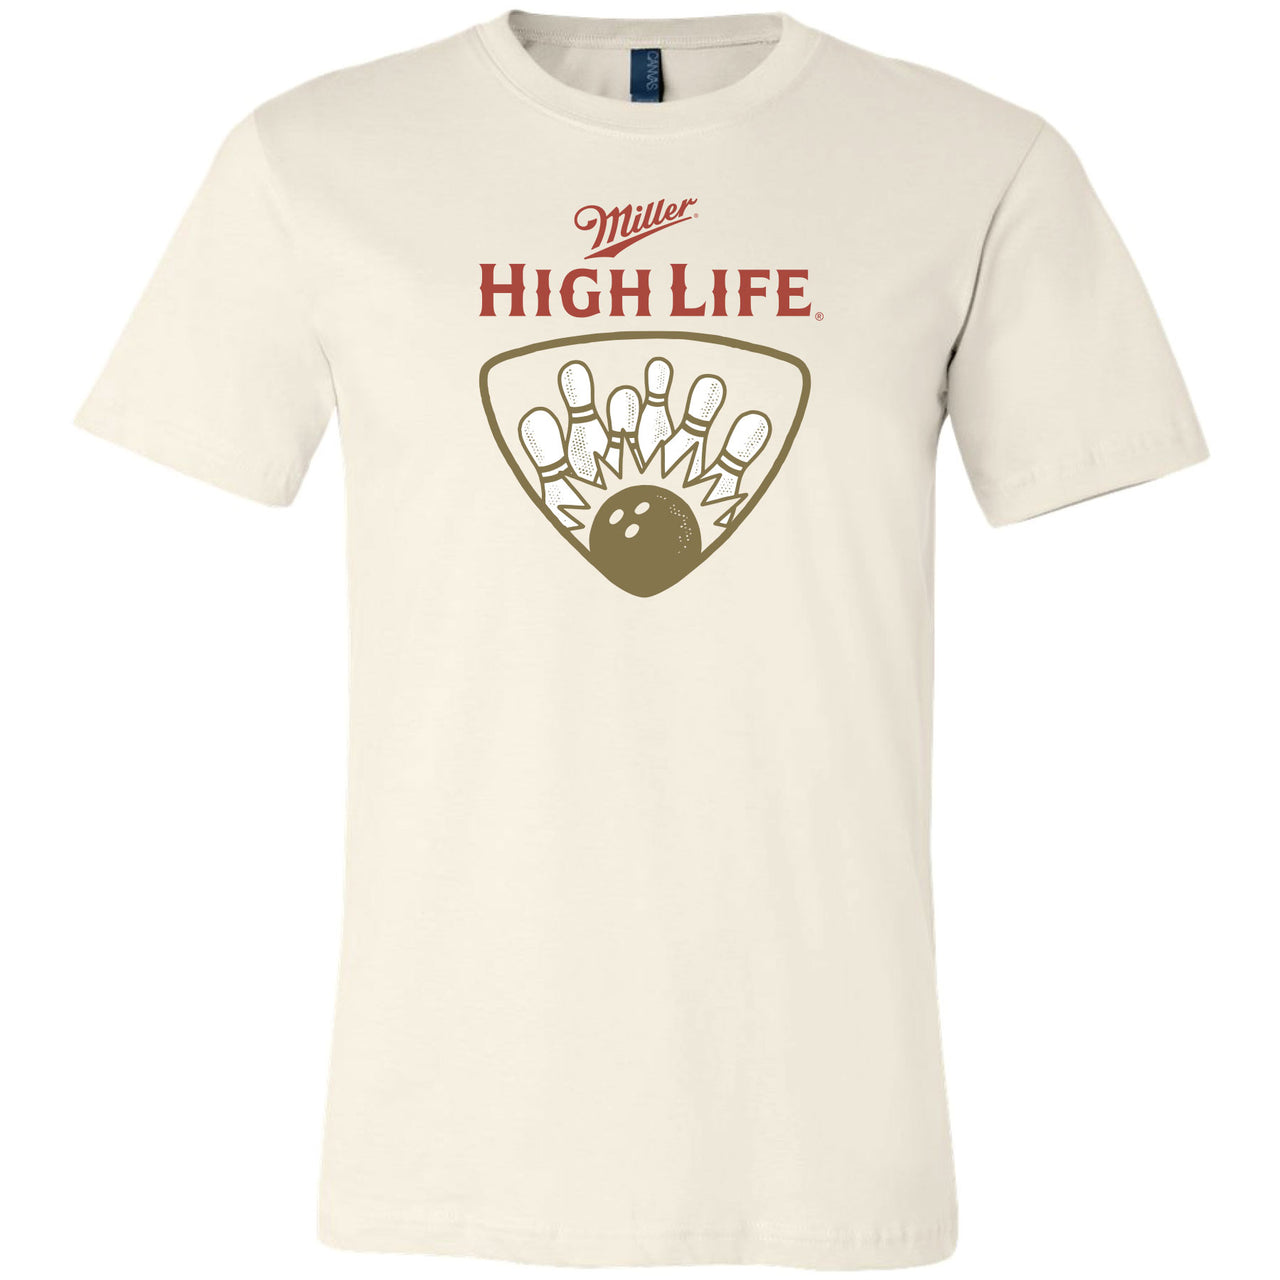 Miller High Life - Bowling League T-shirt